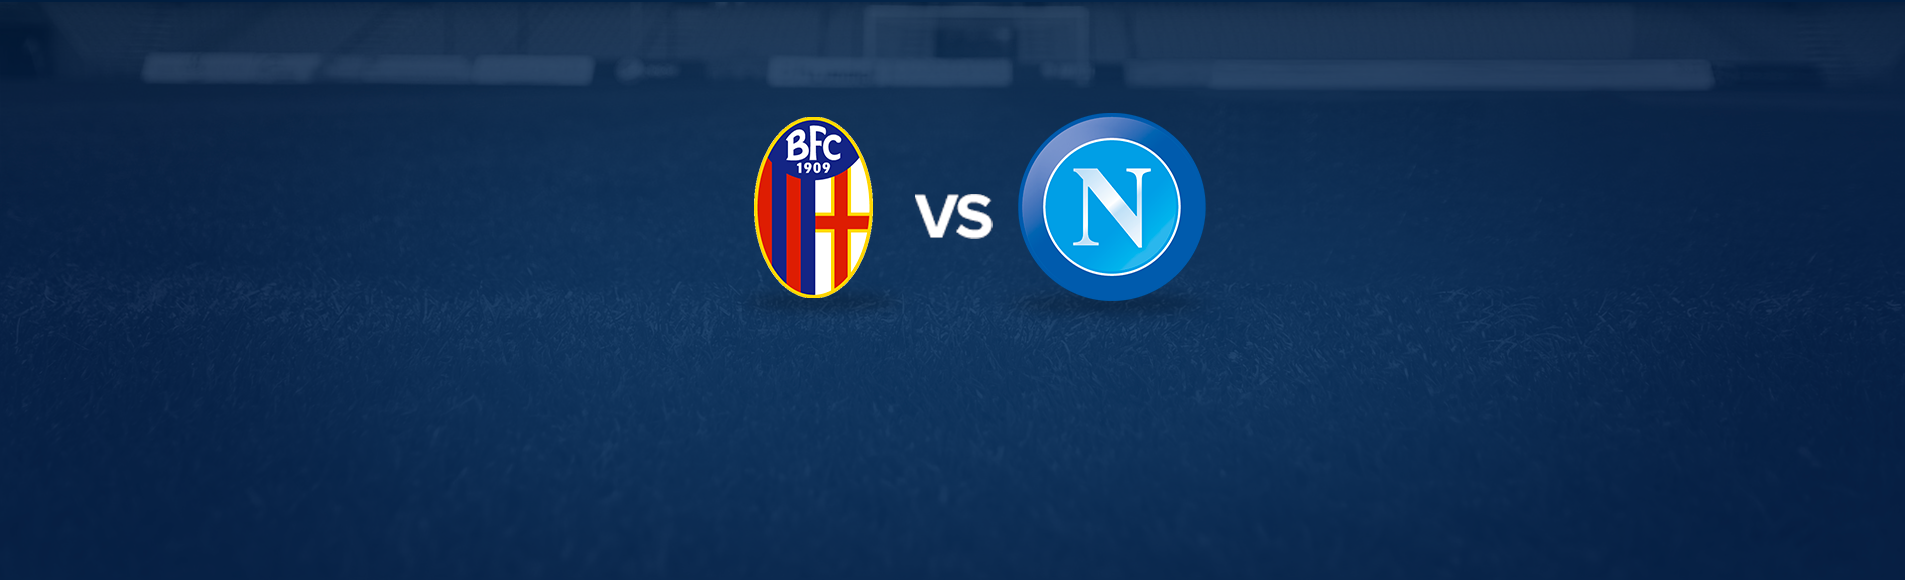 Bologna-Napoli: dove vedere la partita in tv e diretta streaming - NAPOLI CALCIO